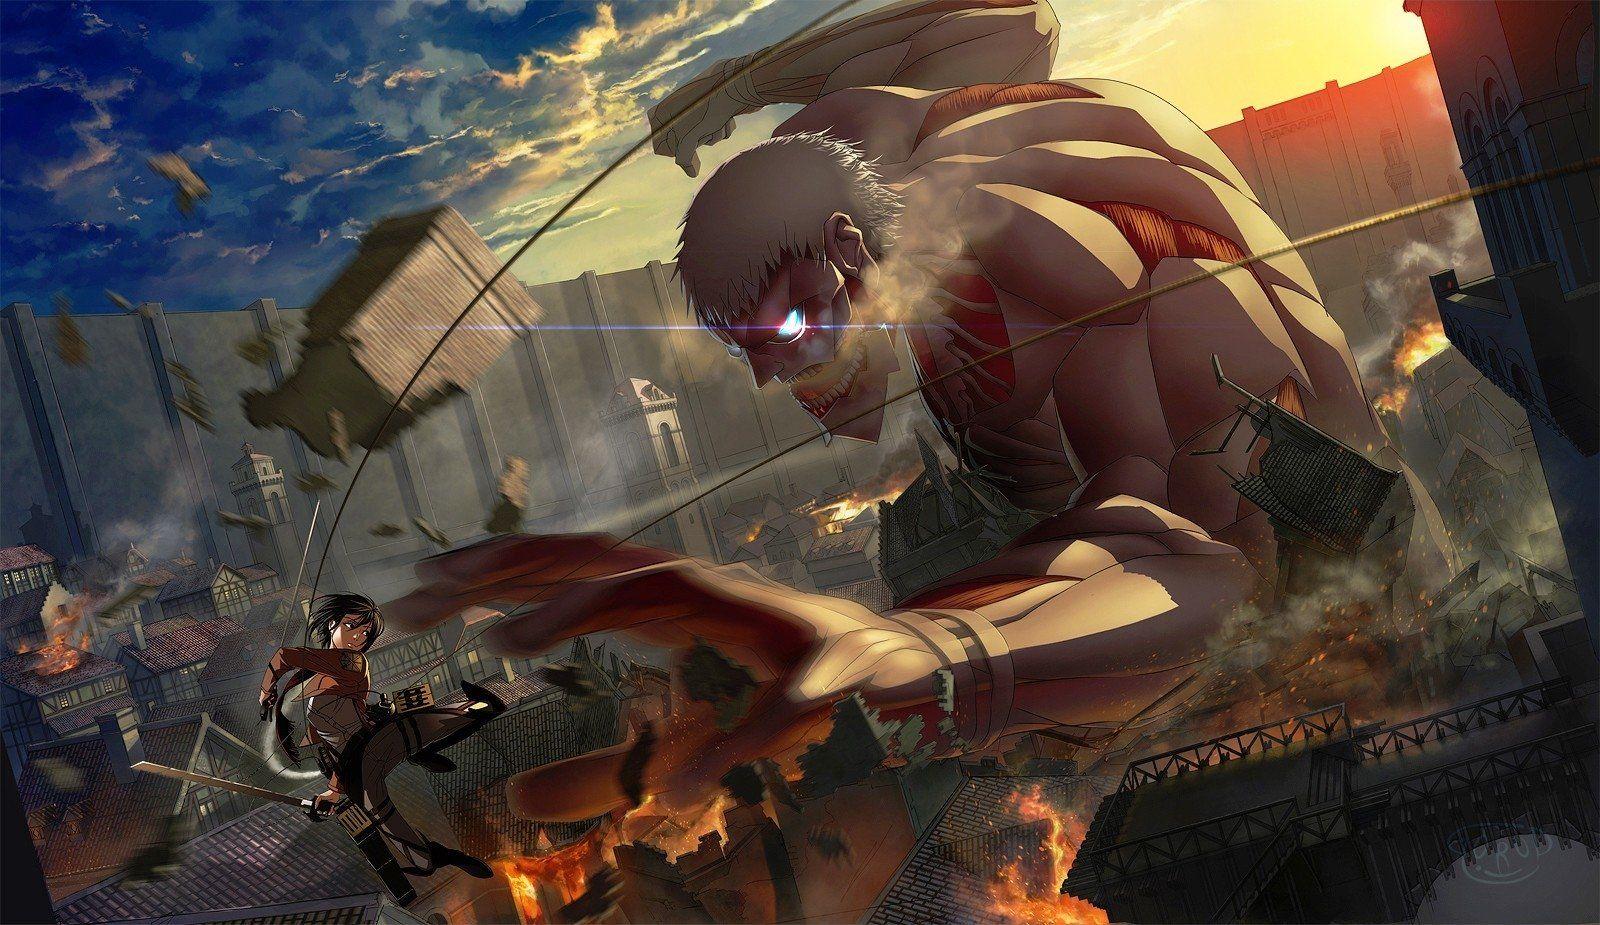 Attack On Titan Anime Wallpaper Free Attack On Titan Anime